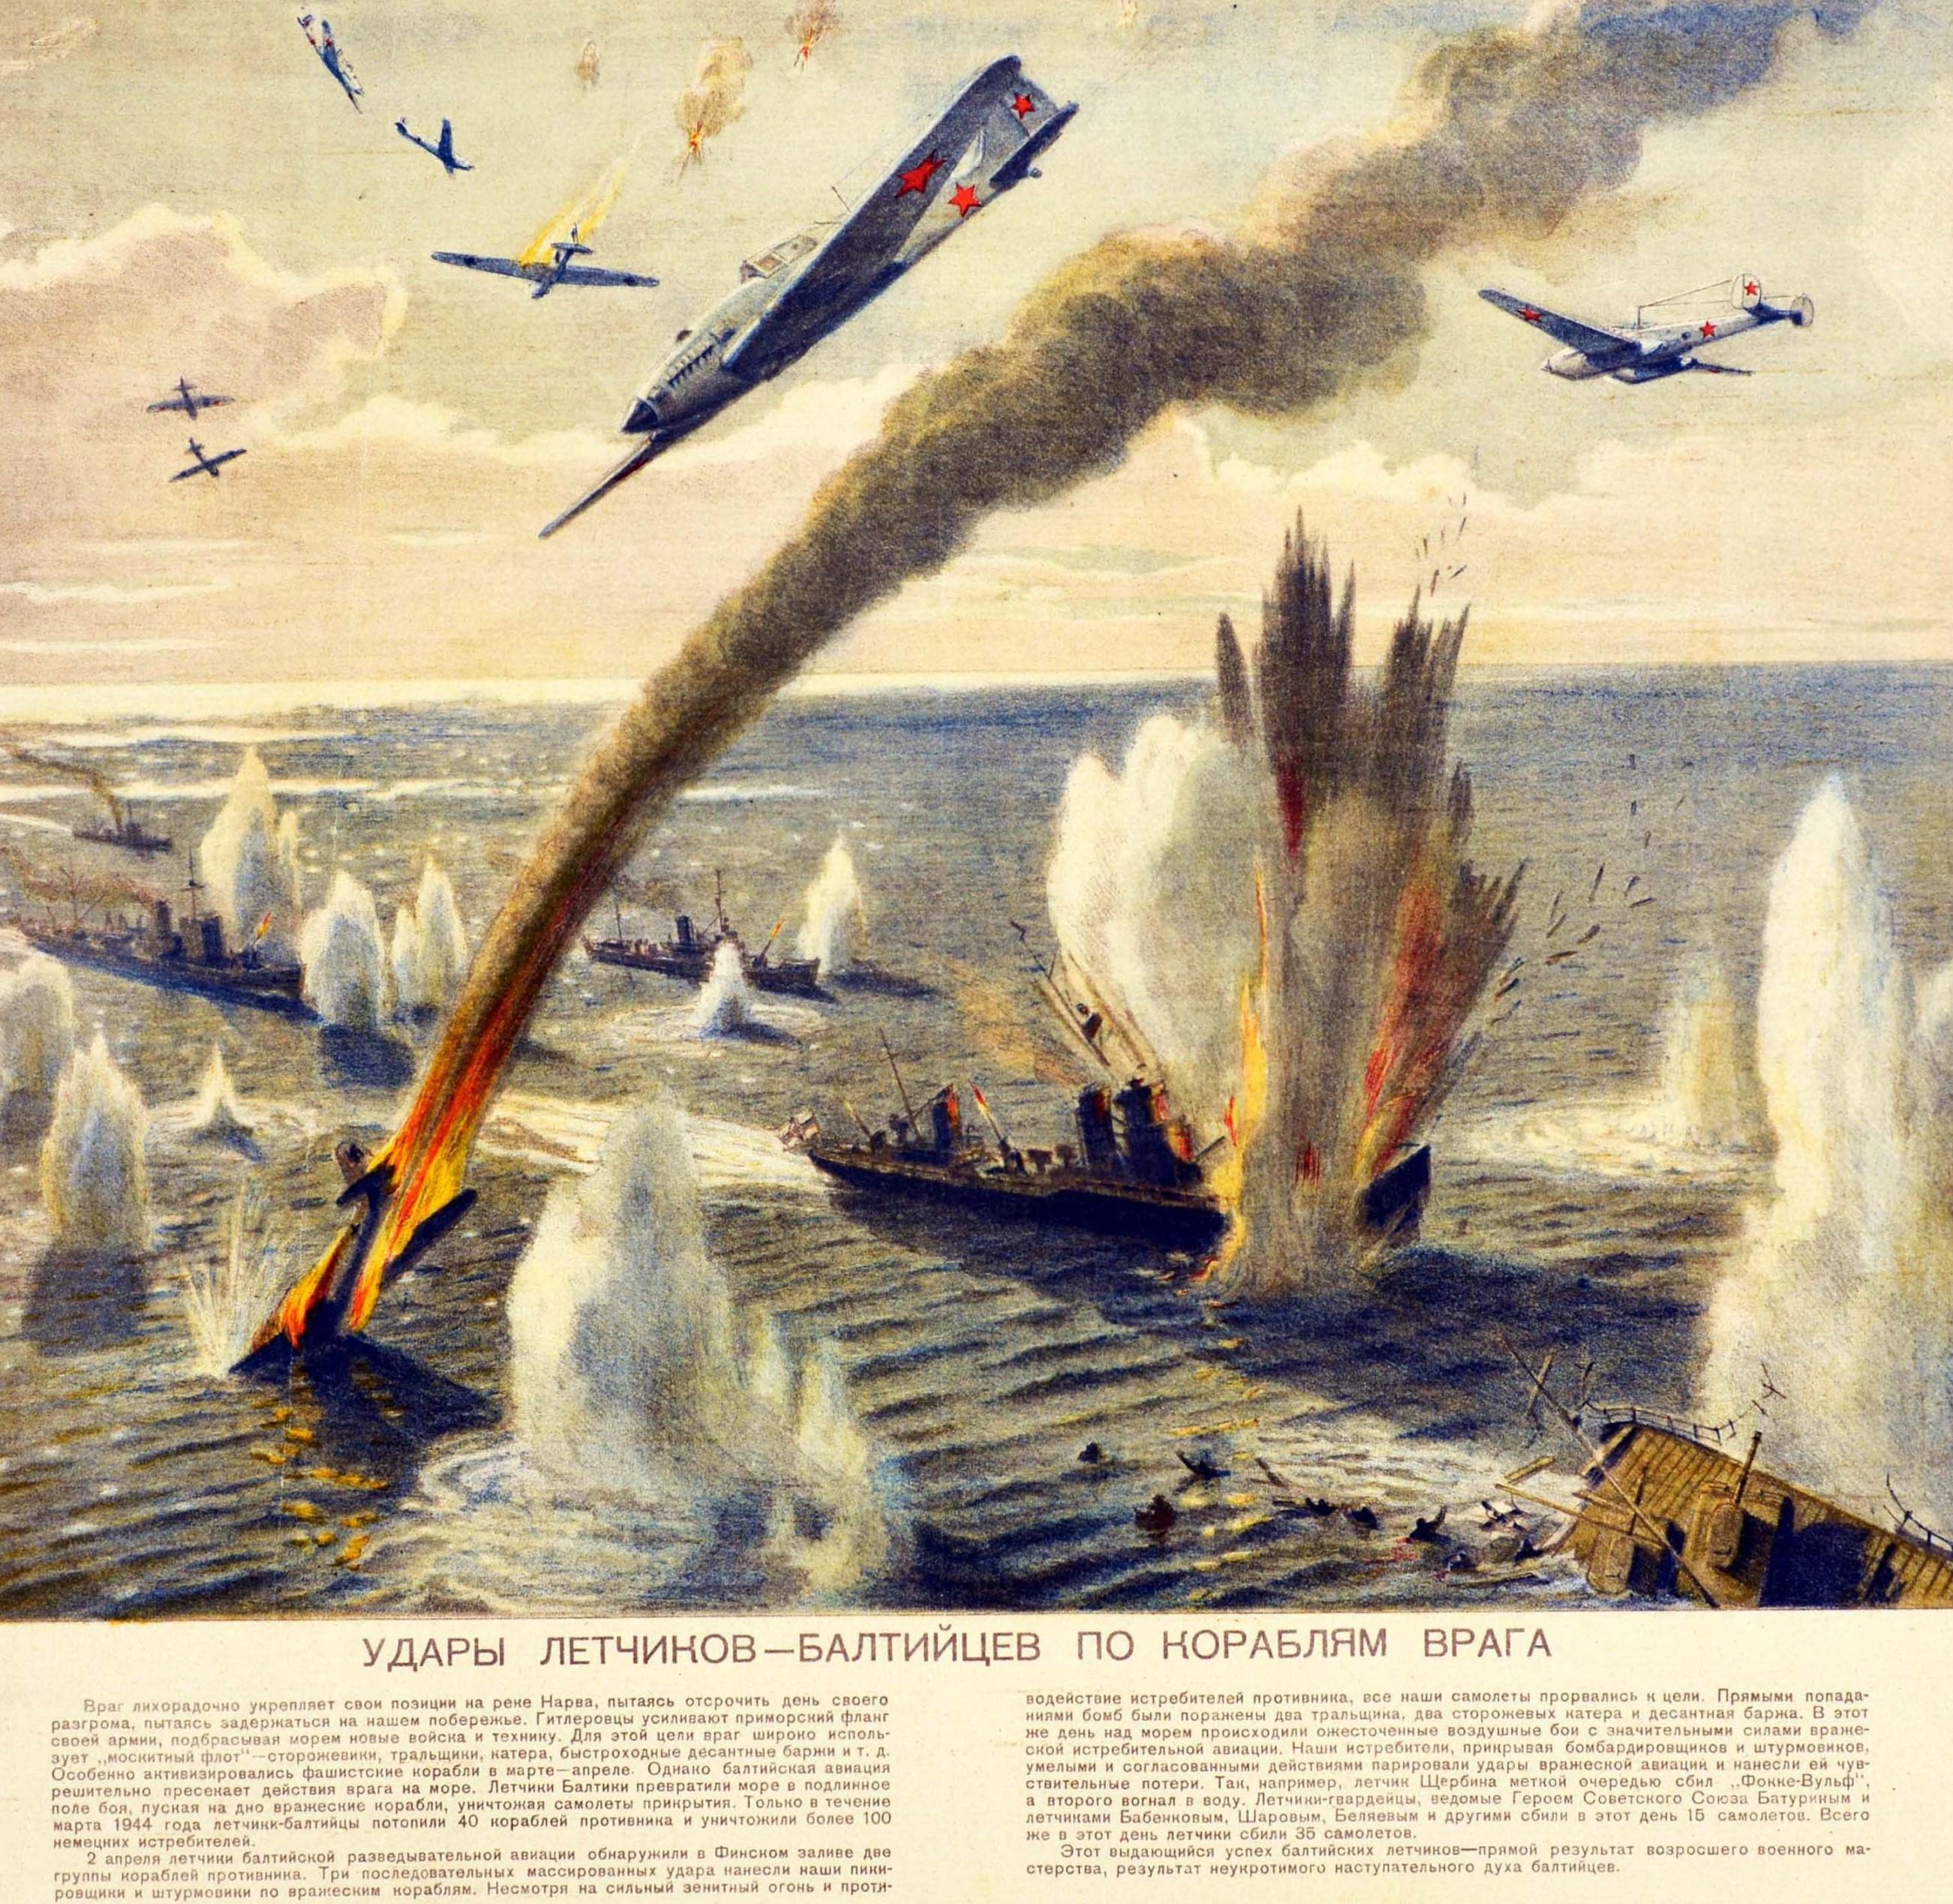 Originalplakat aus dem Zweiten Weltkrieg mit einer Kampfszene, die baltische Piloten zeigt, die feindliche Kriegsschiffe auf See zerstören, mit einer Illustration von Flugzeugen, die durch den Rauch am Himmel fliegen und die Schiffe bombardieren,